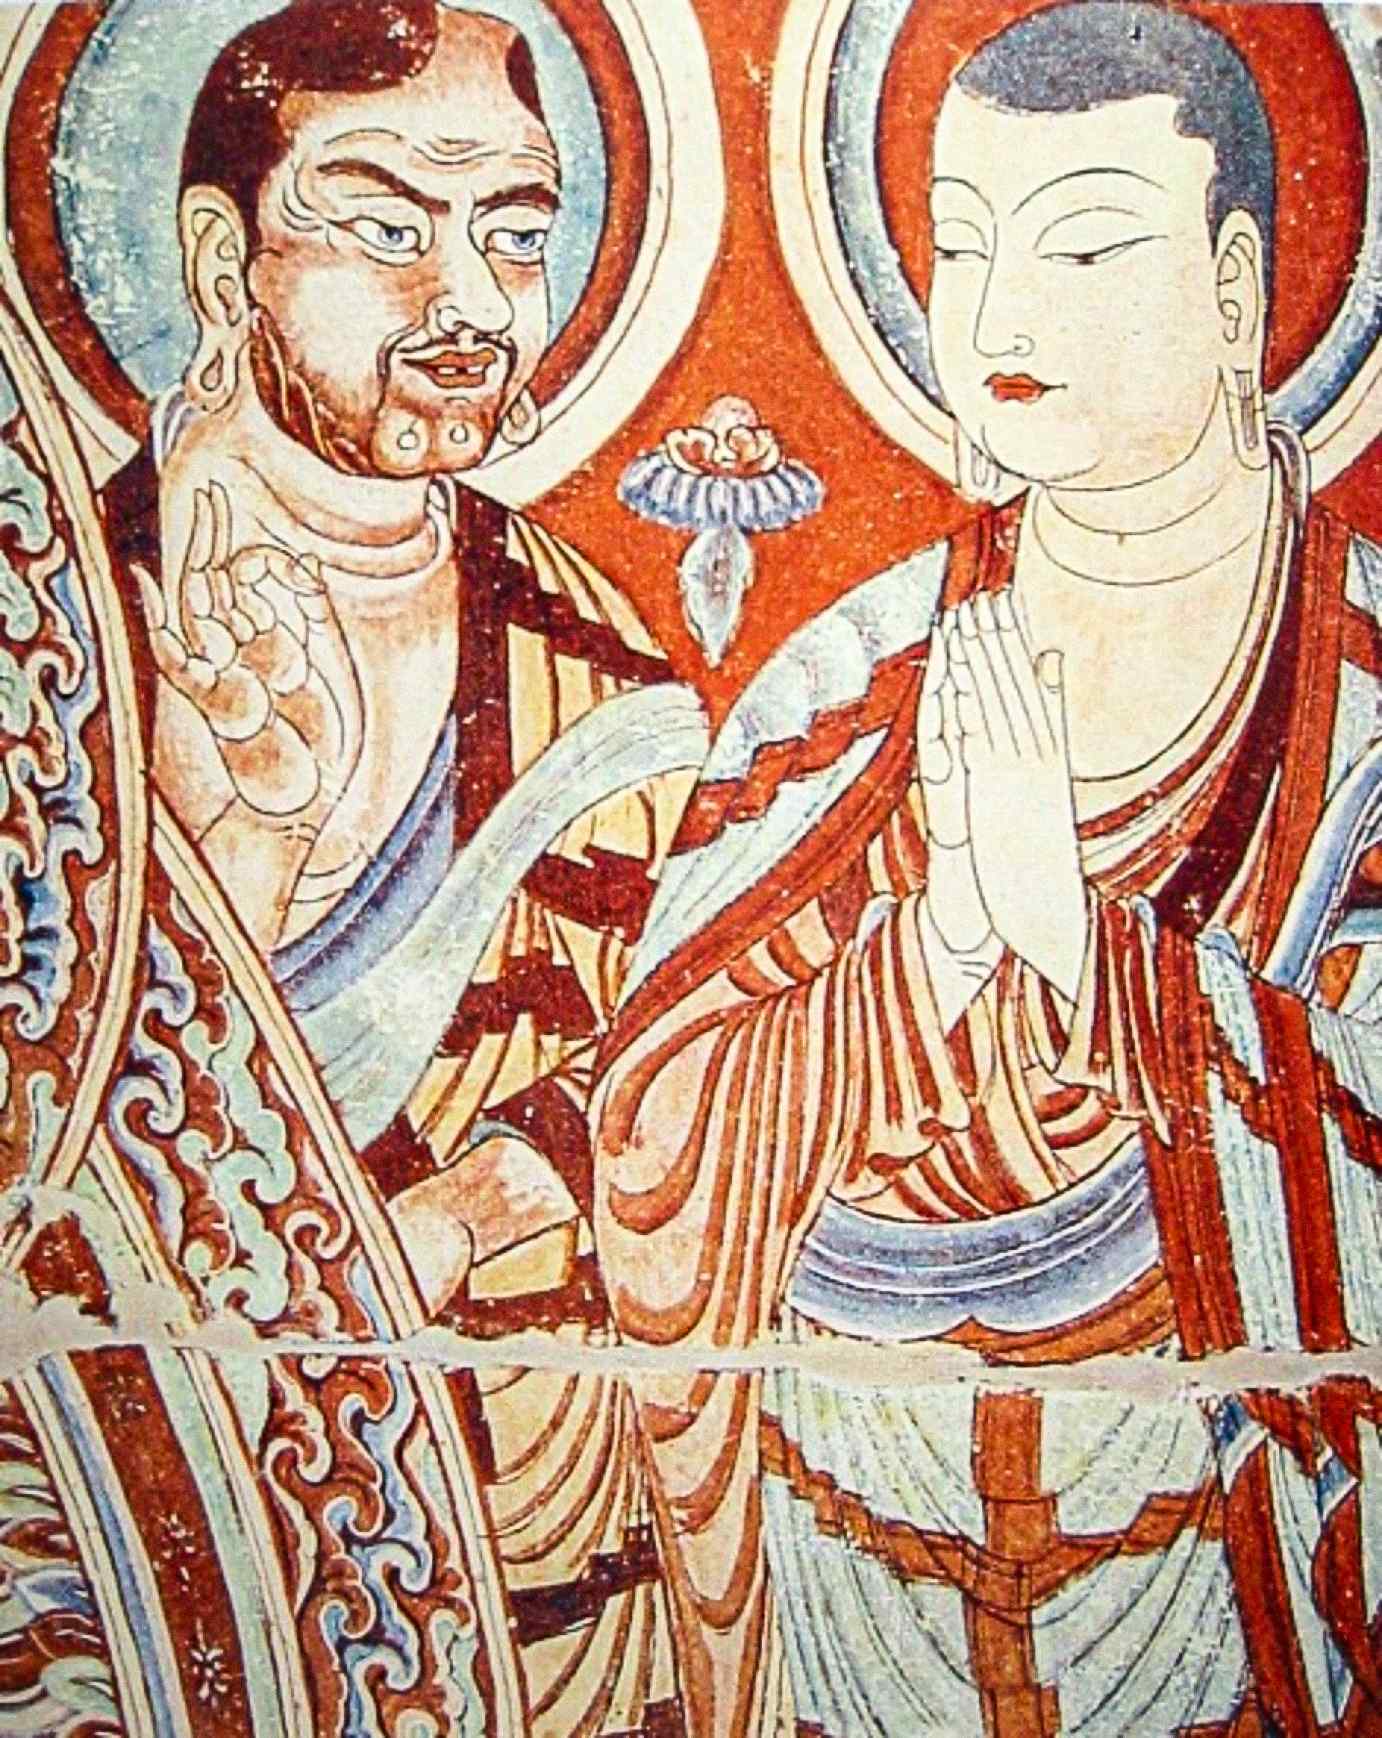 Seorang sami Asia Tengah Kaukasia, mungkin seorang Sogdian atau Tocharian Indo-Eropah, mengajar seorang sami Asia Timur, mungkin seorang Uyghur Turki atau Cina, pada lukisan dinding abad ke-9 Masihi dari Gua Bezeklik Thousand Buddha berhampiran Turfan, Xinjiang, China.